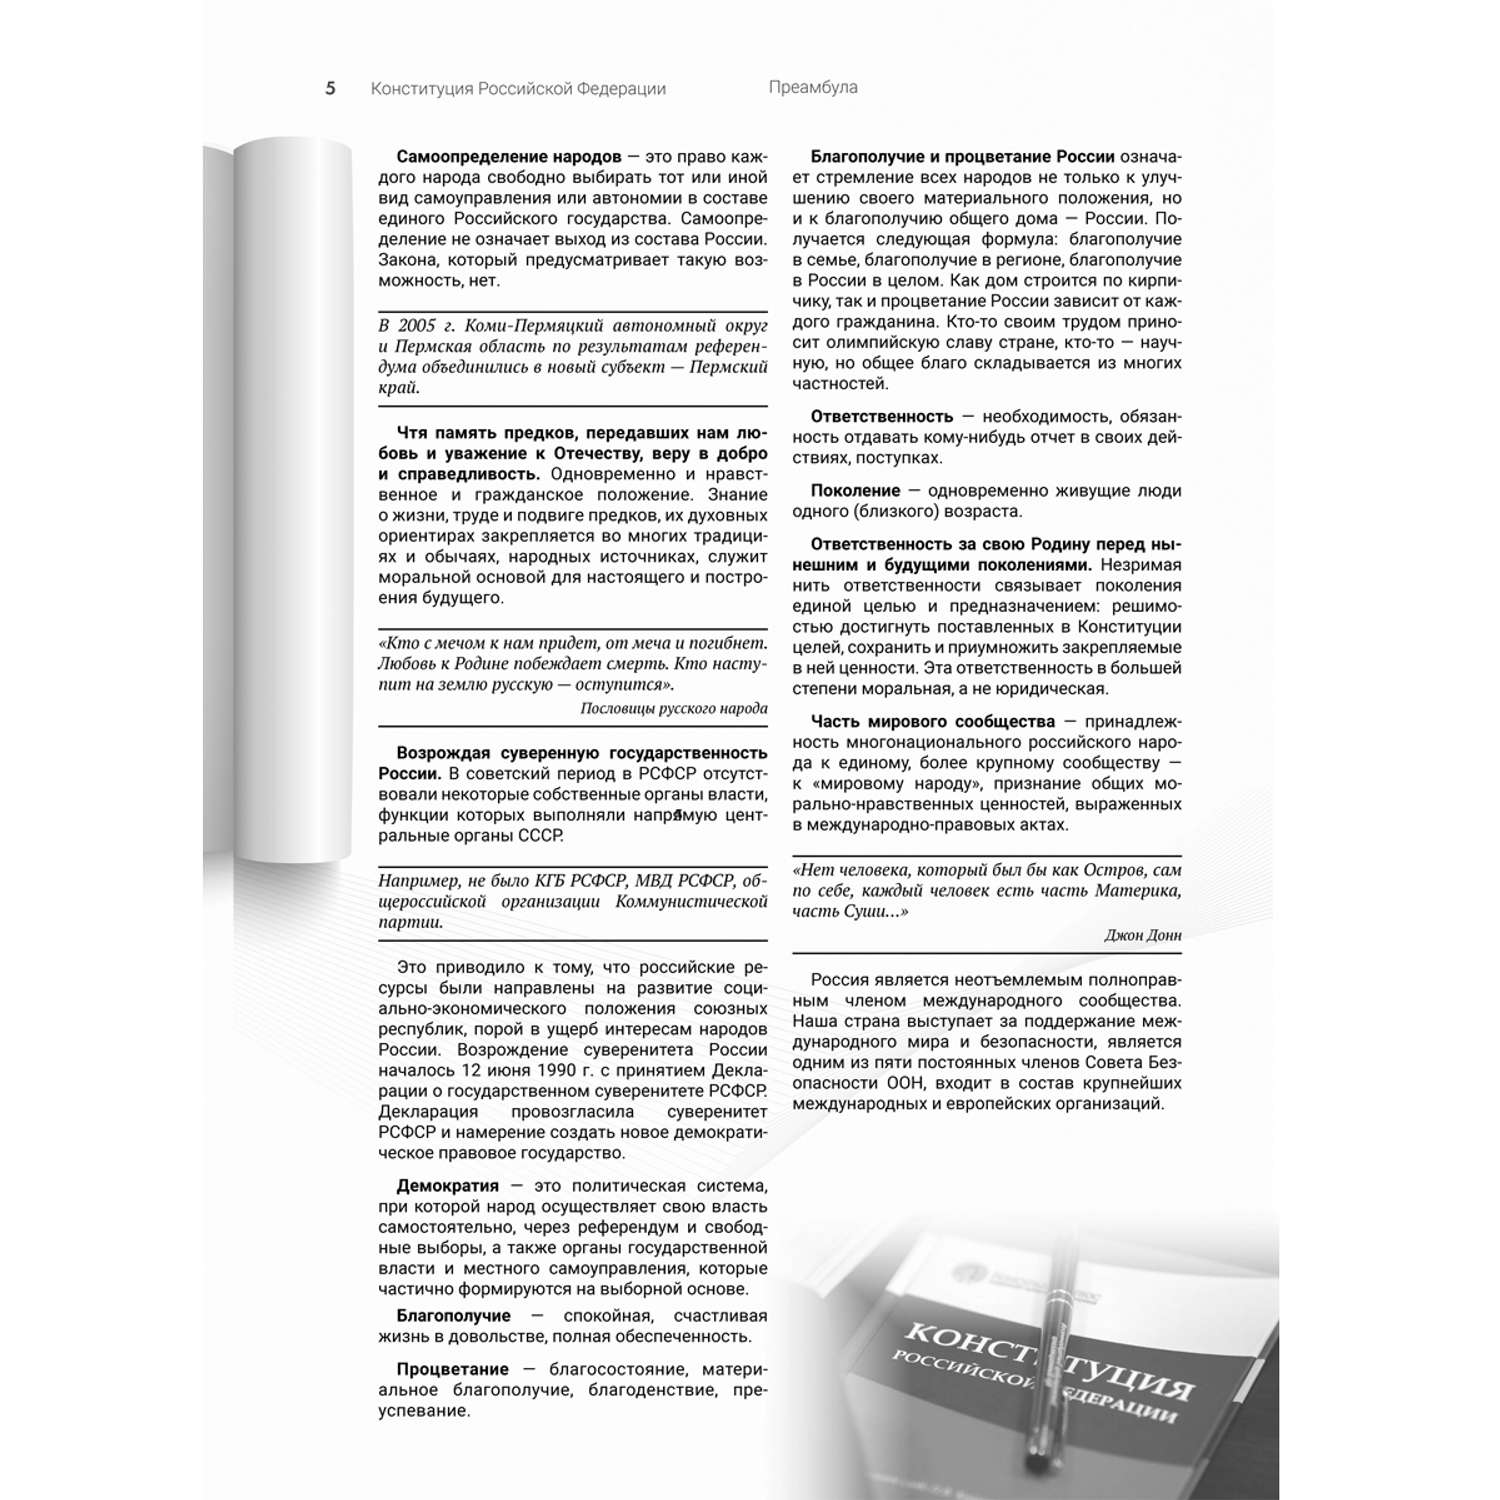 Книга Проспект Подробный иллюстрированный комментарий к Конституции РФ - фото 5